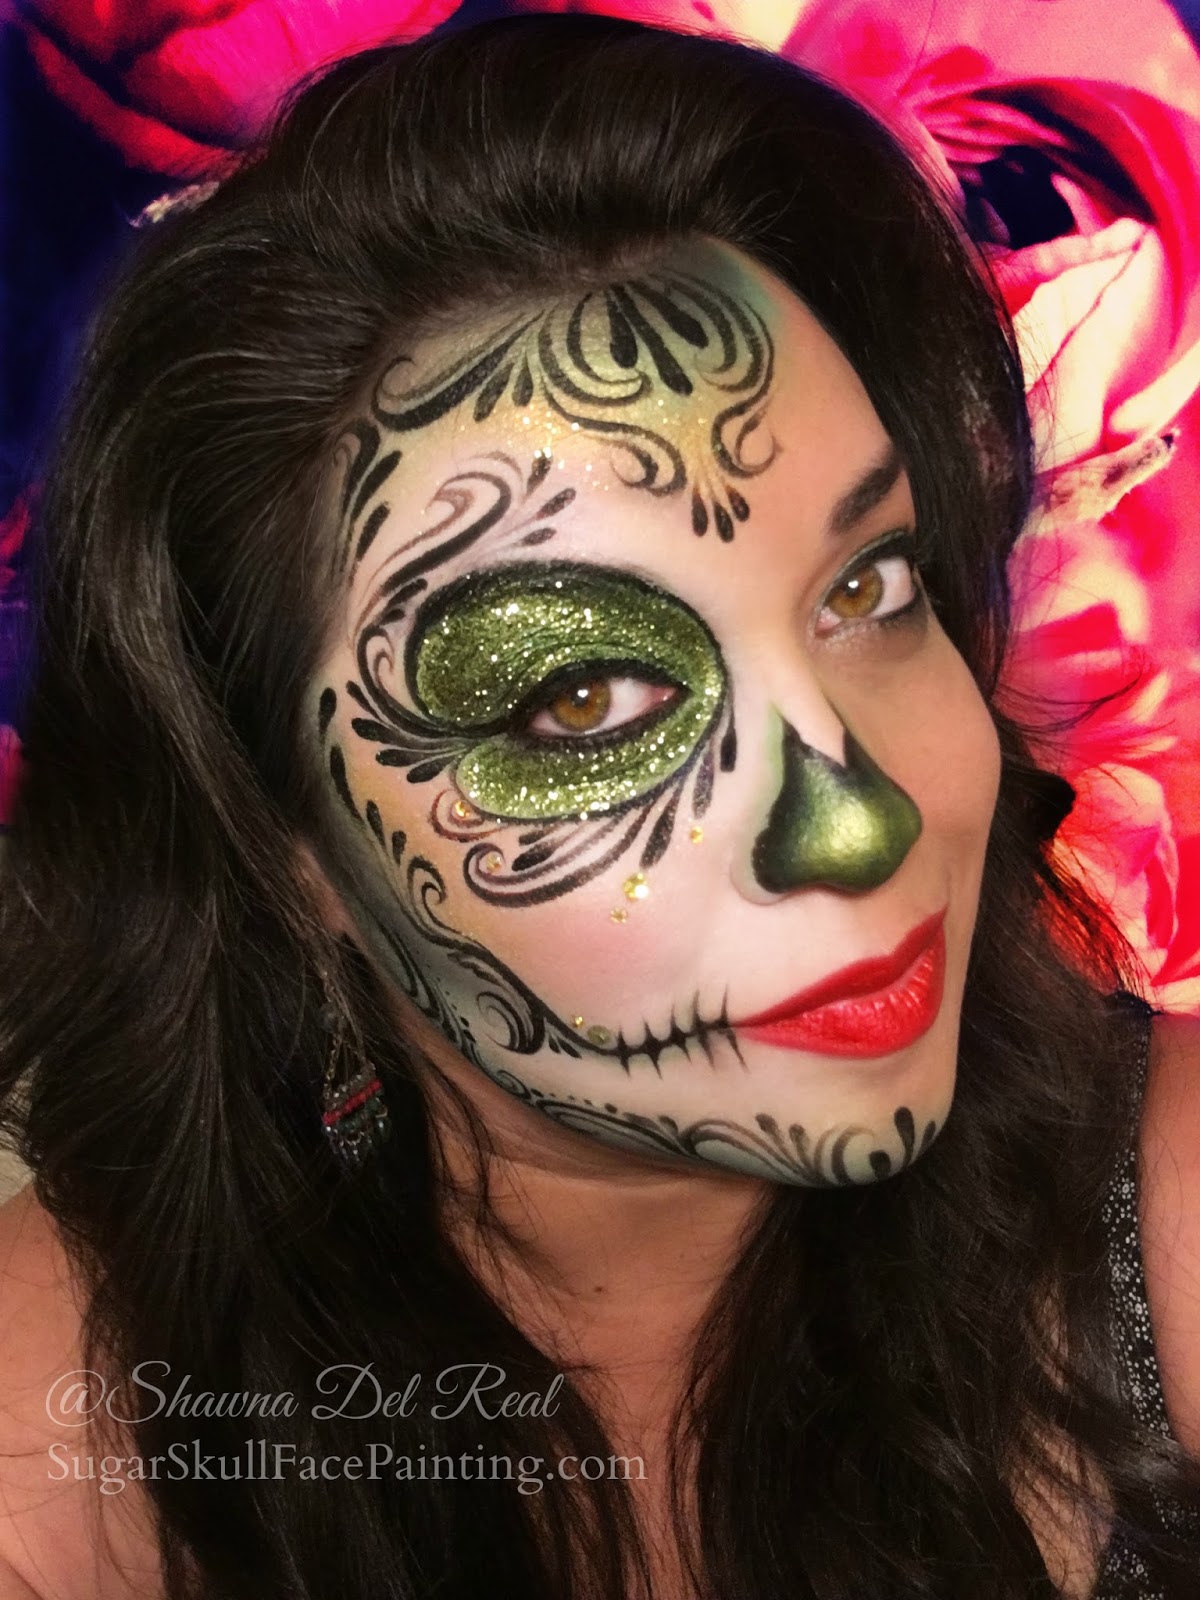 Shawna D Make Up Green Sugar Skull Makeup